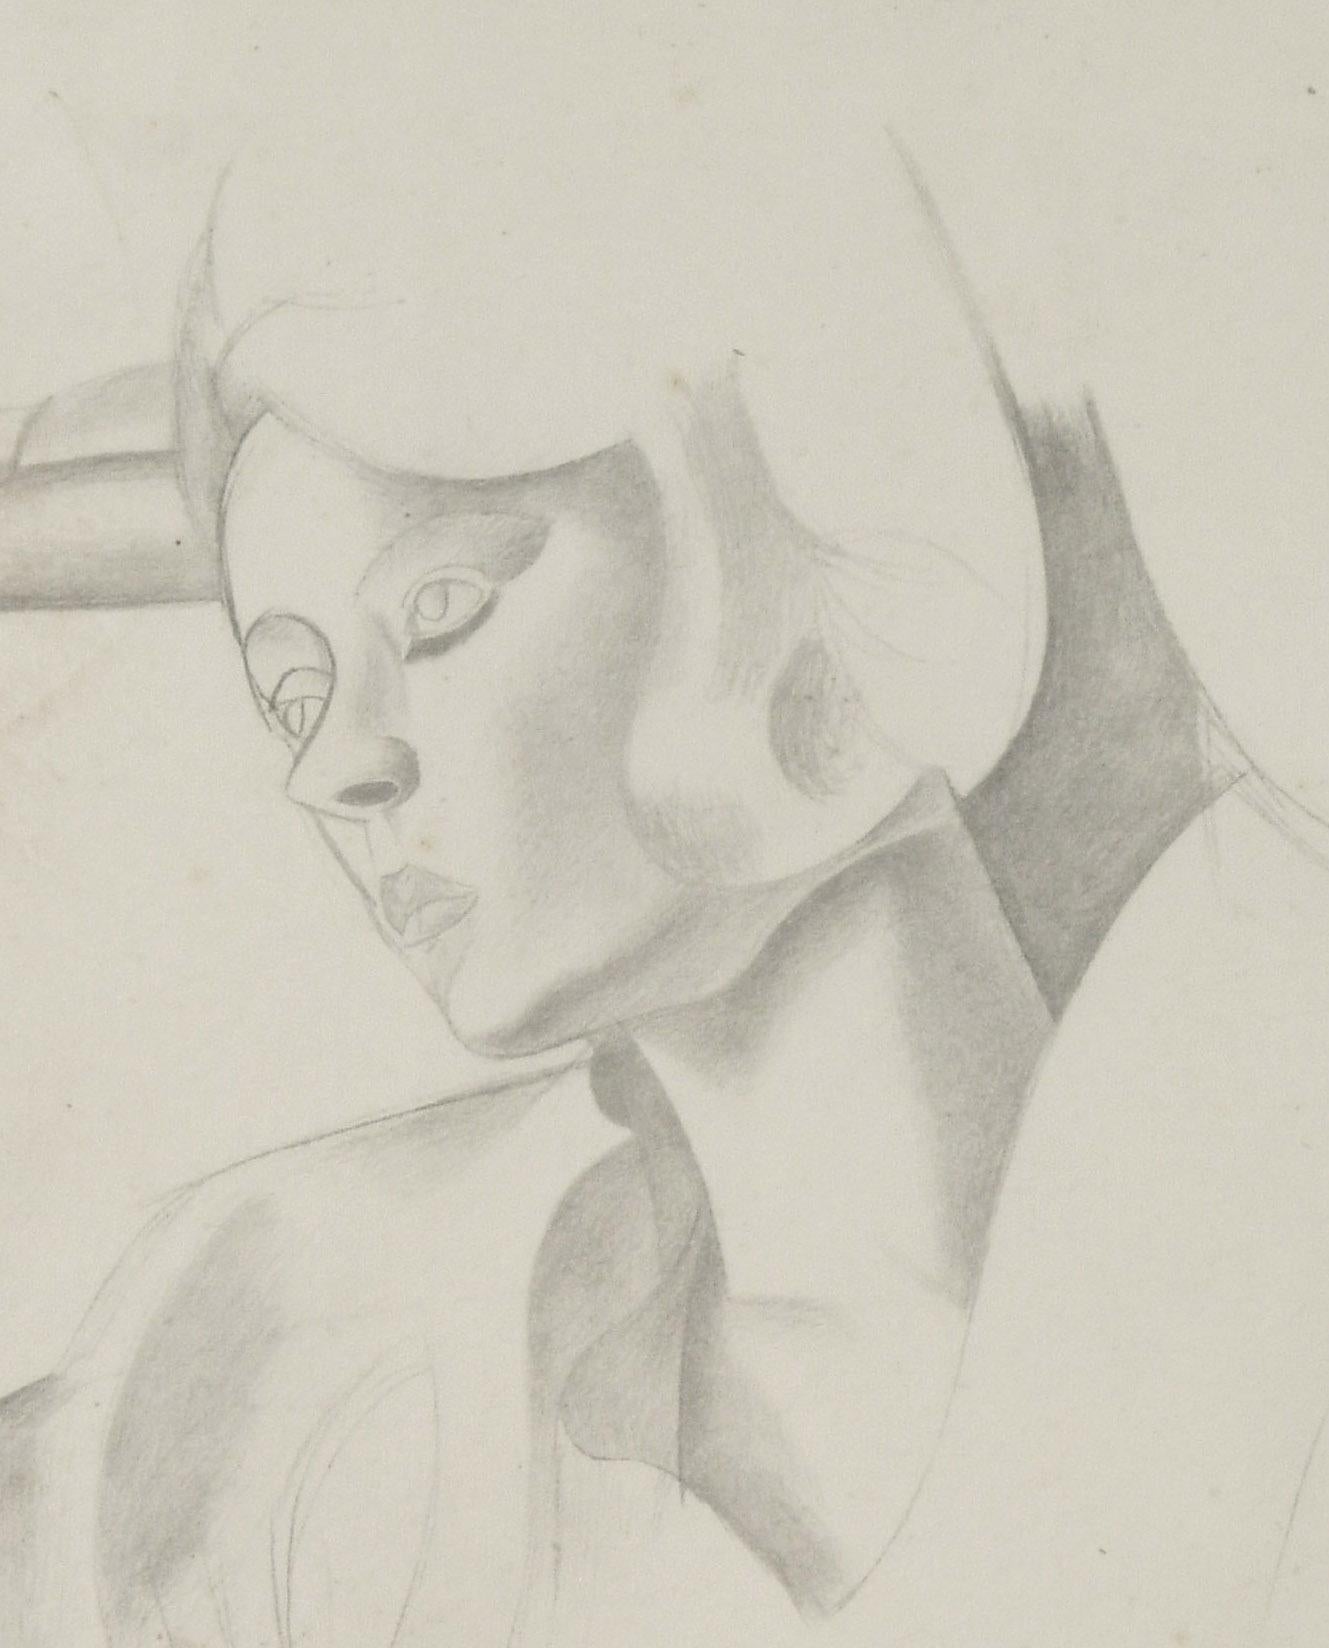 Porträt von Gladys Anne Hoskyns
Lichtdruck nach einer Zeichnung von Wyndham Lewis, 1923
In der Platte gesungen und mit Bleistift verstärkt
Veröffentlicht von The Dial Publishing Company in Living Art: Zwanzig Faksimile-Reproduktionen nach Gemälden,